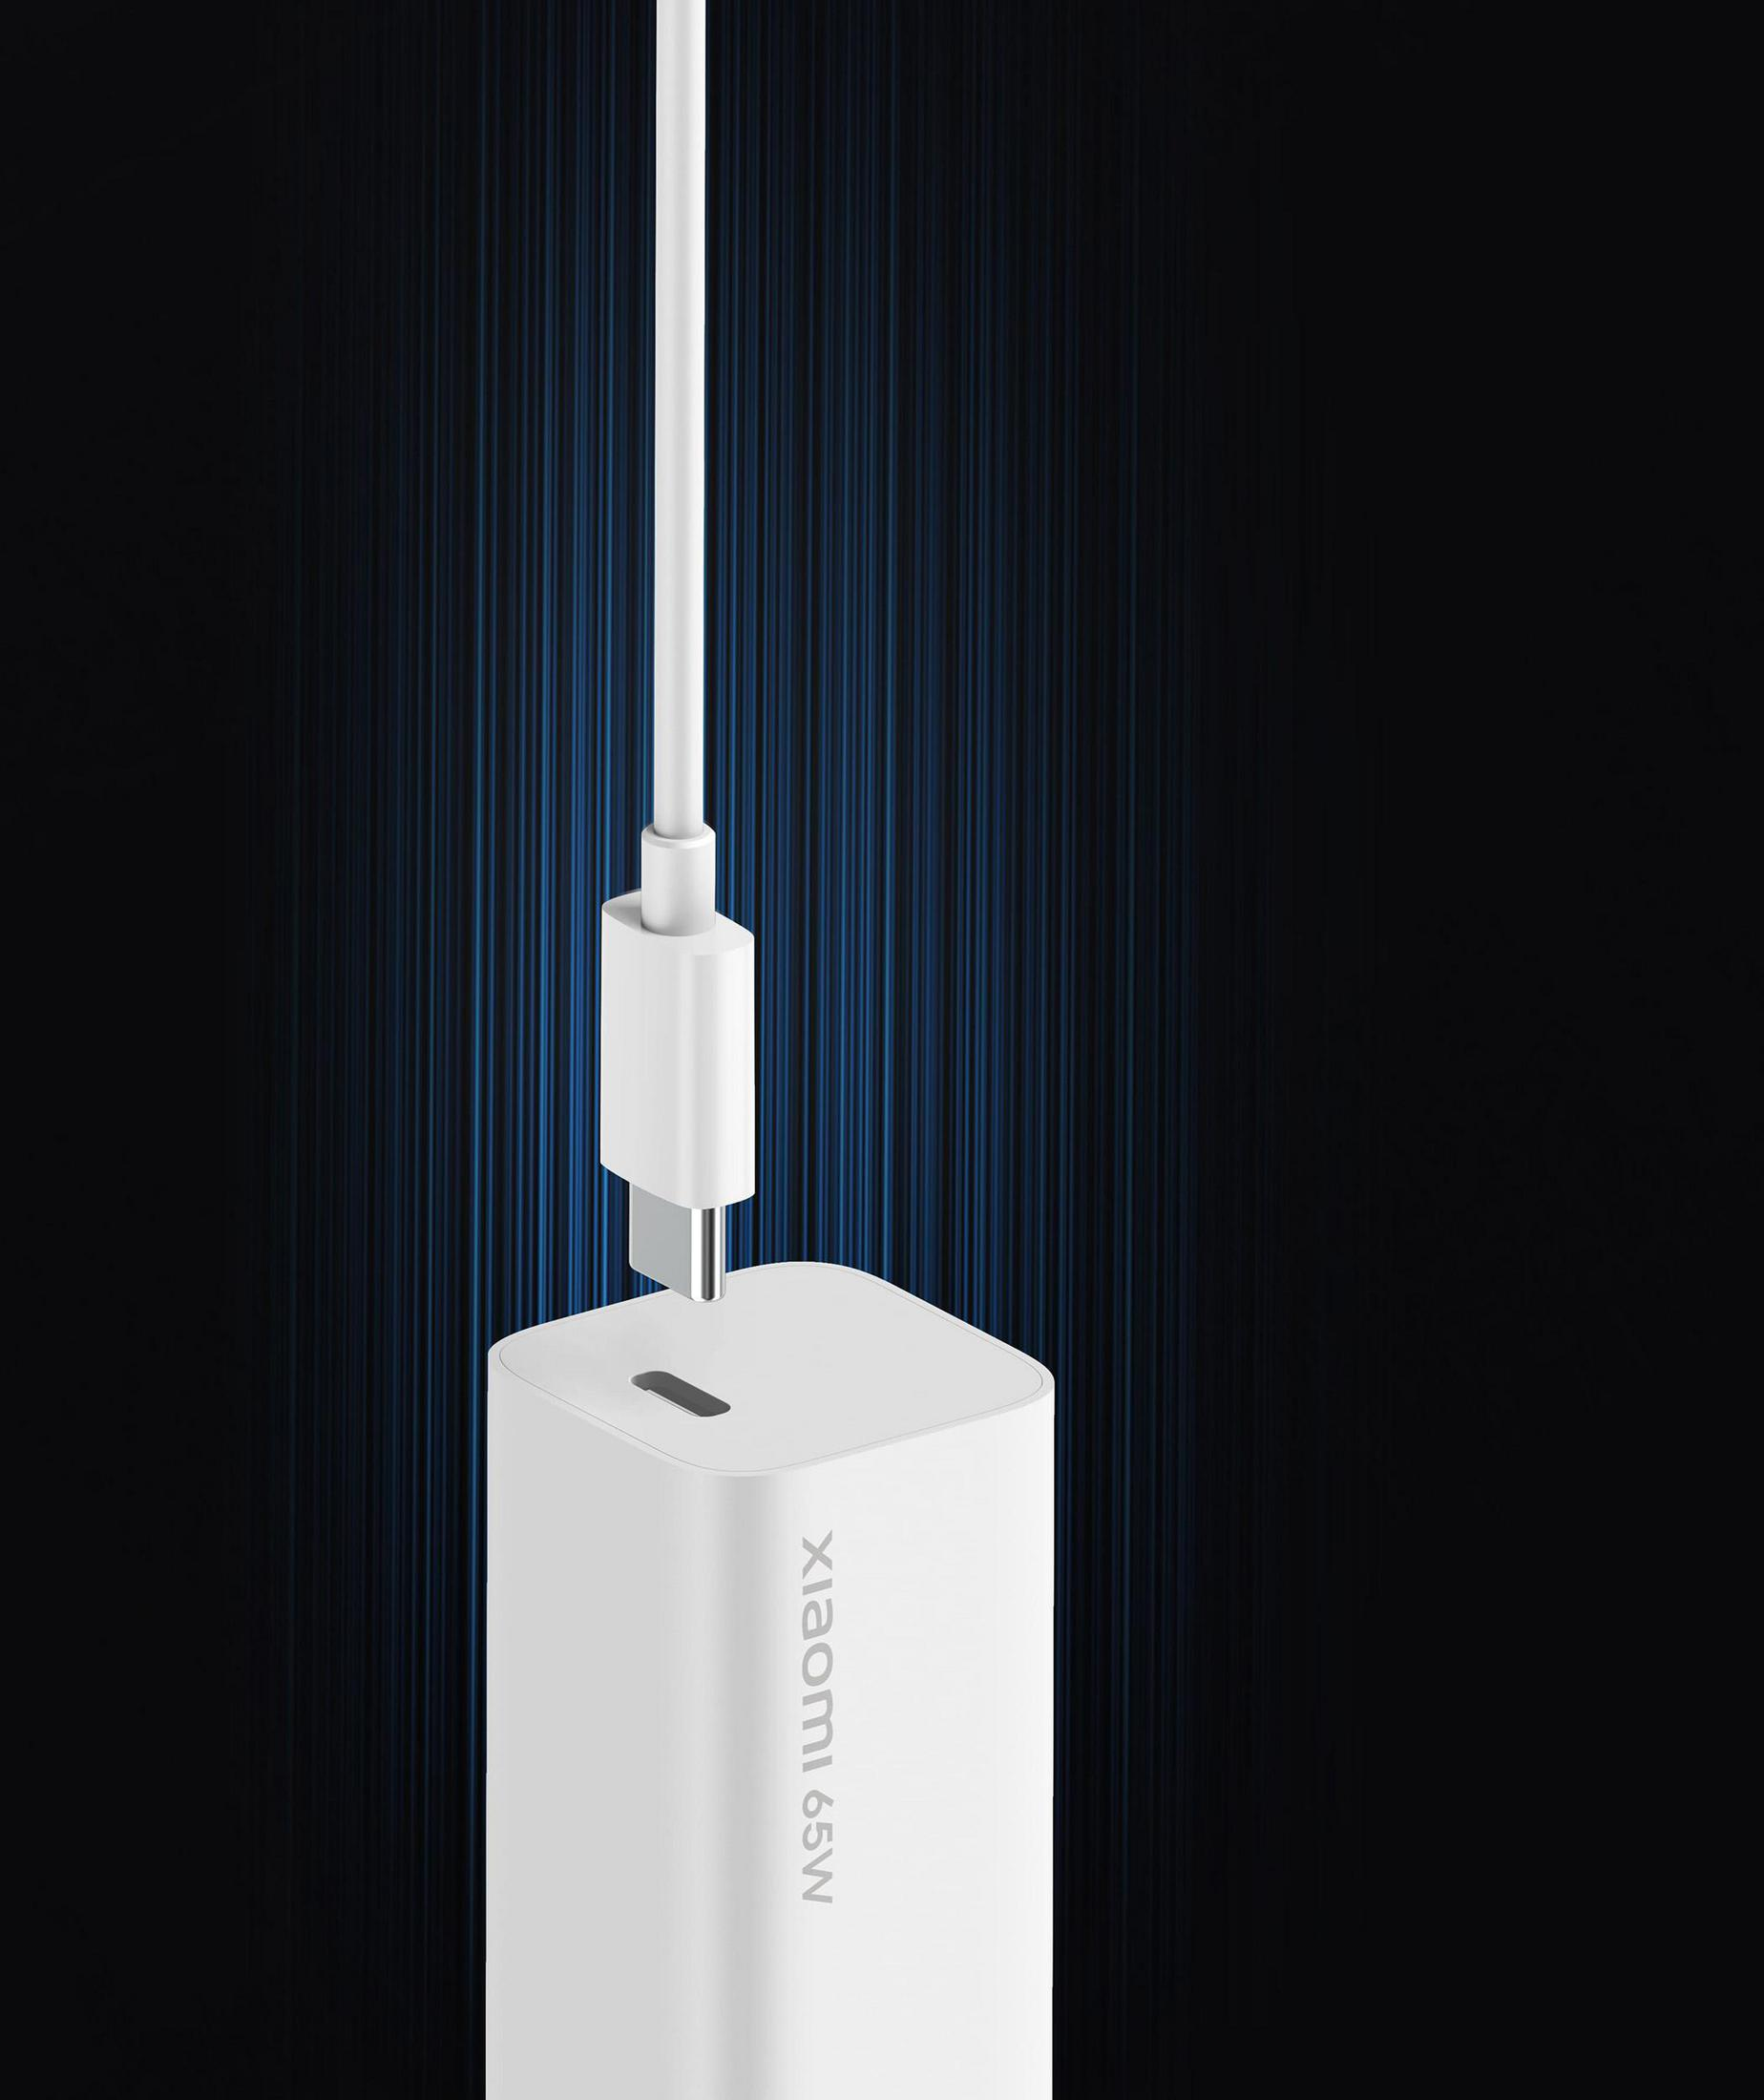 5A XIAOMI Wand-Ladegerät Volt, Netzteil, Weiß 100-240 Netzteile USB-C Universal,